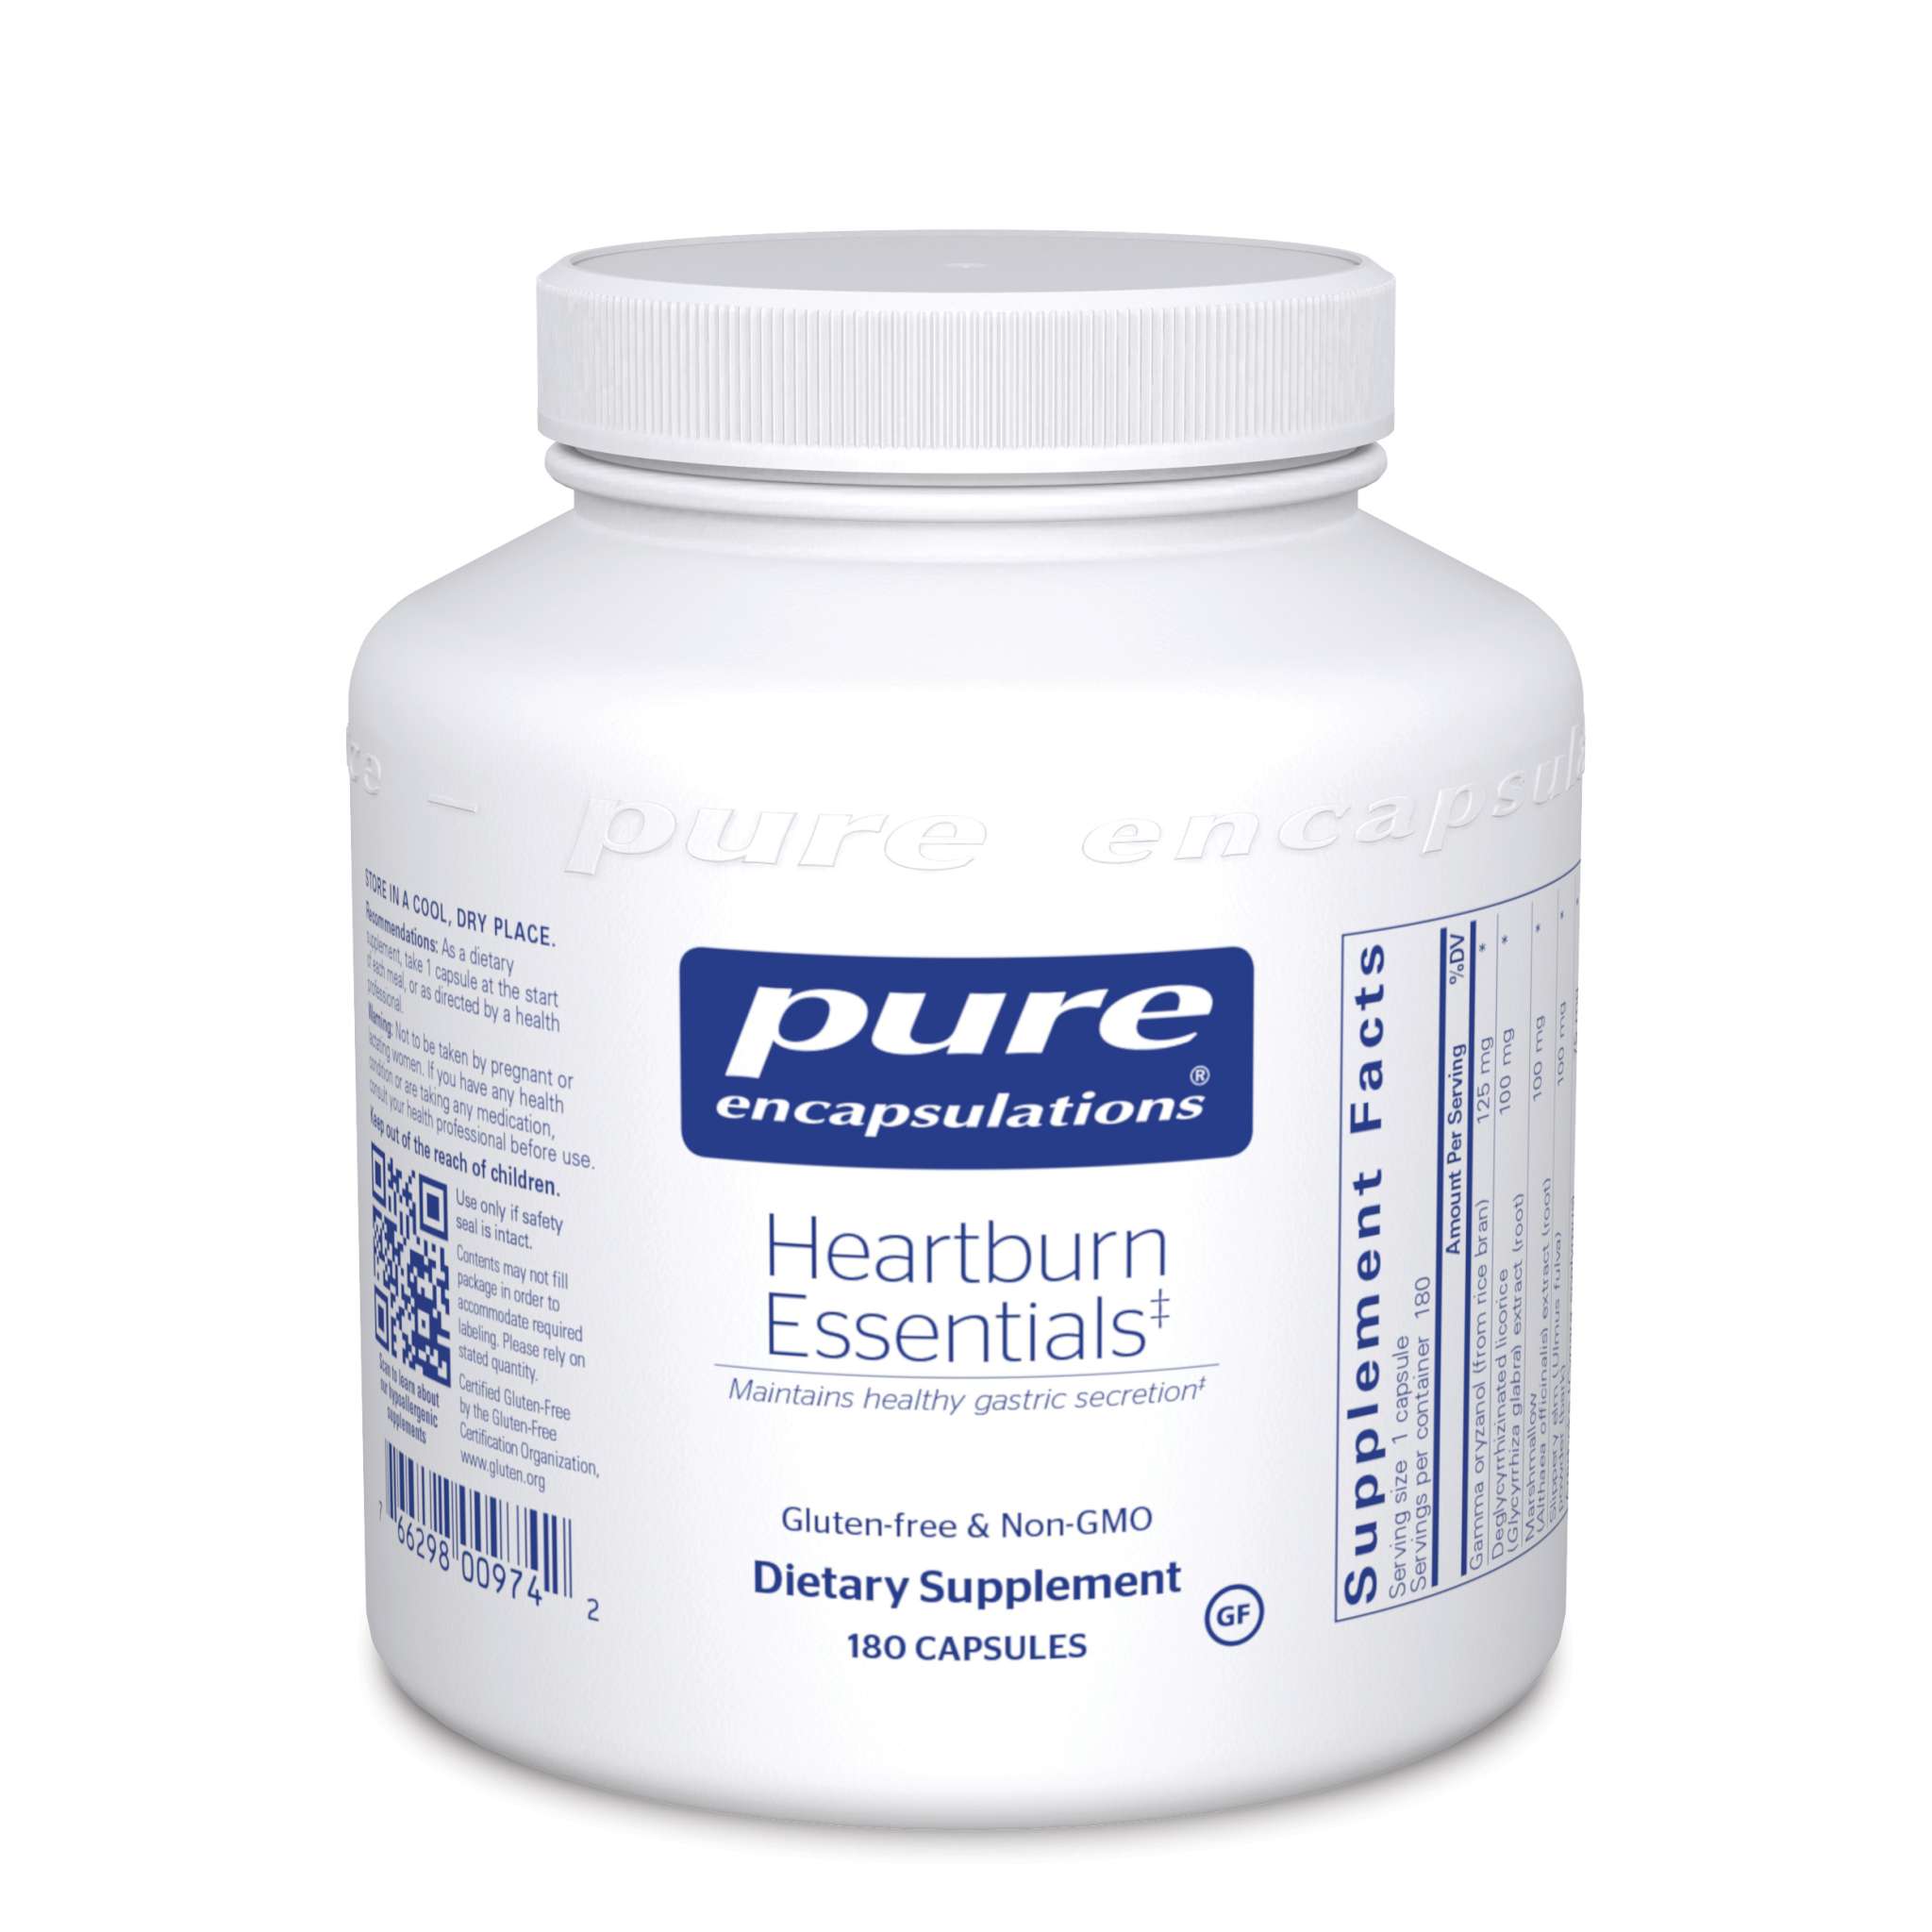 Pure Encapsulations - Heartburn Essentials